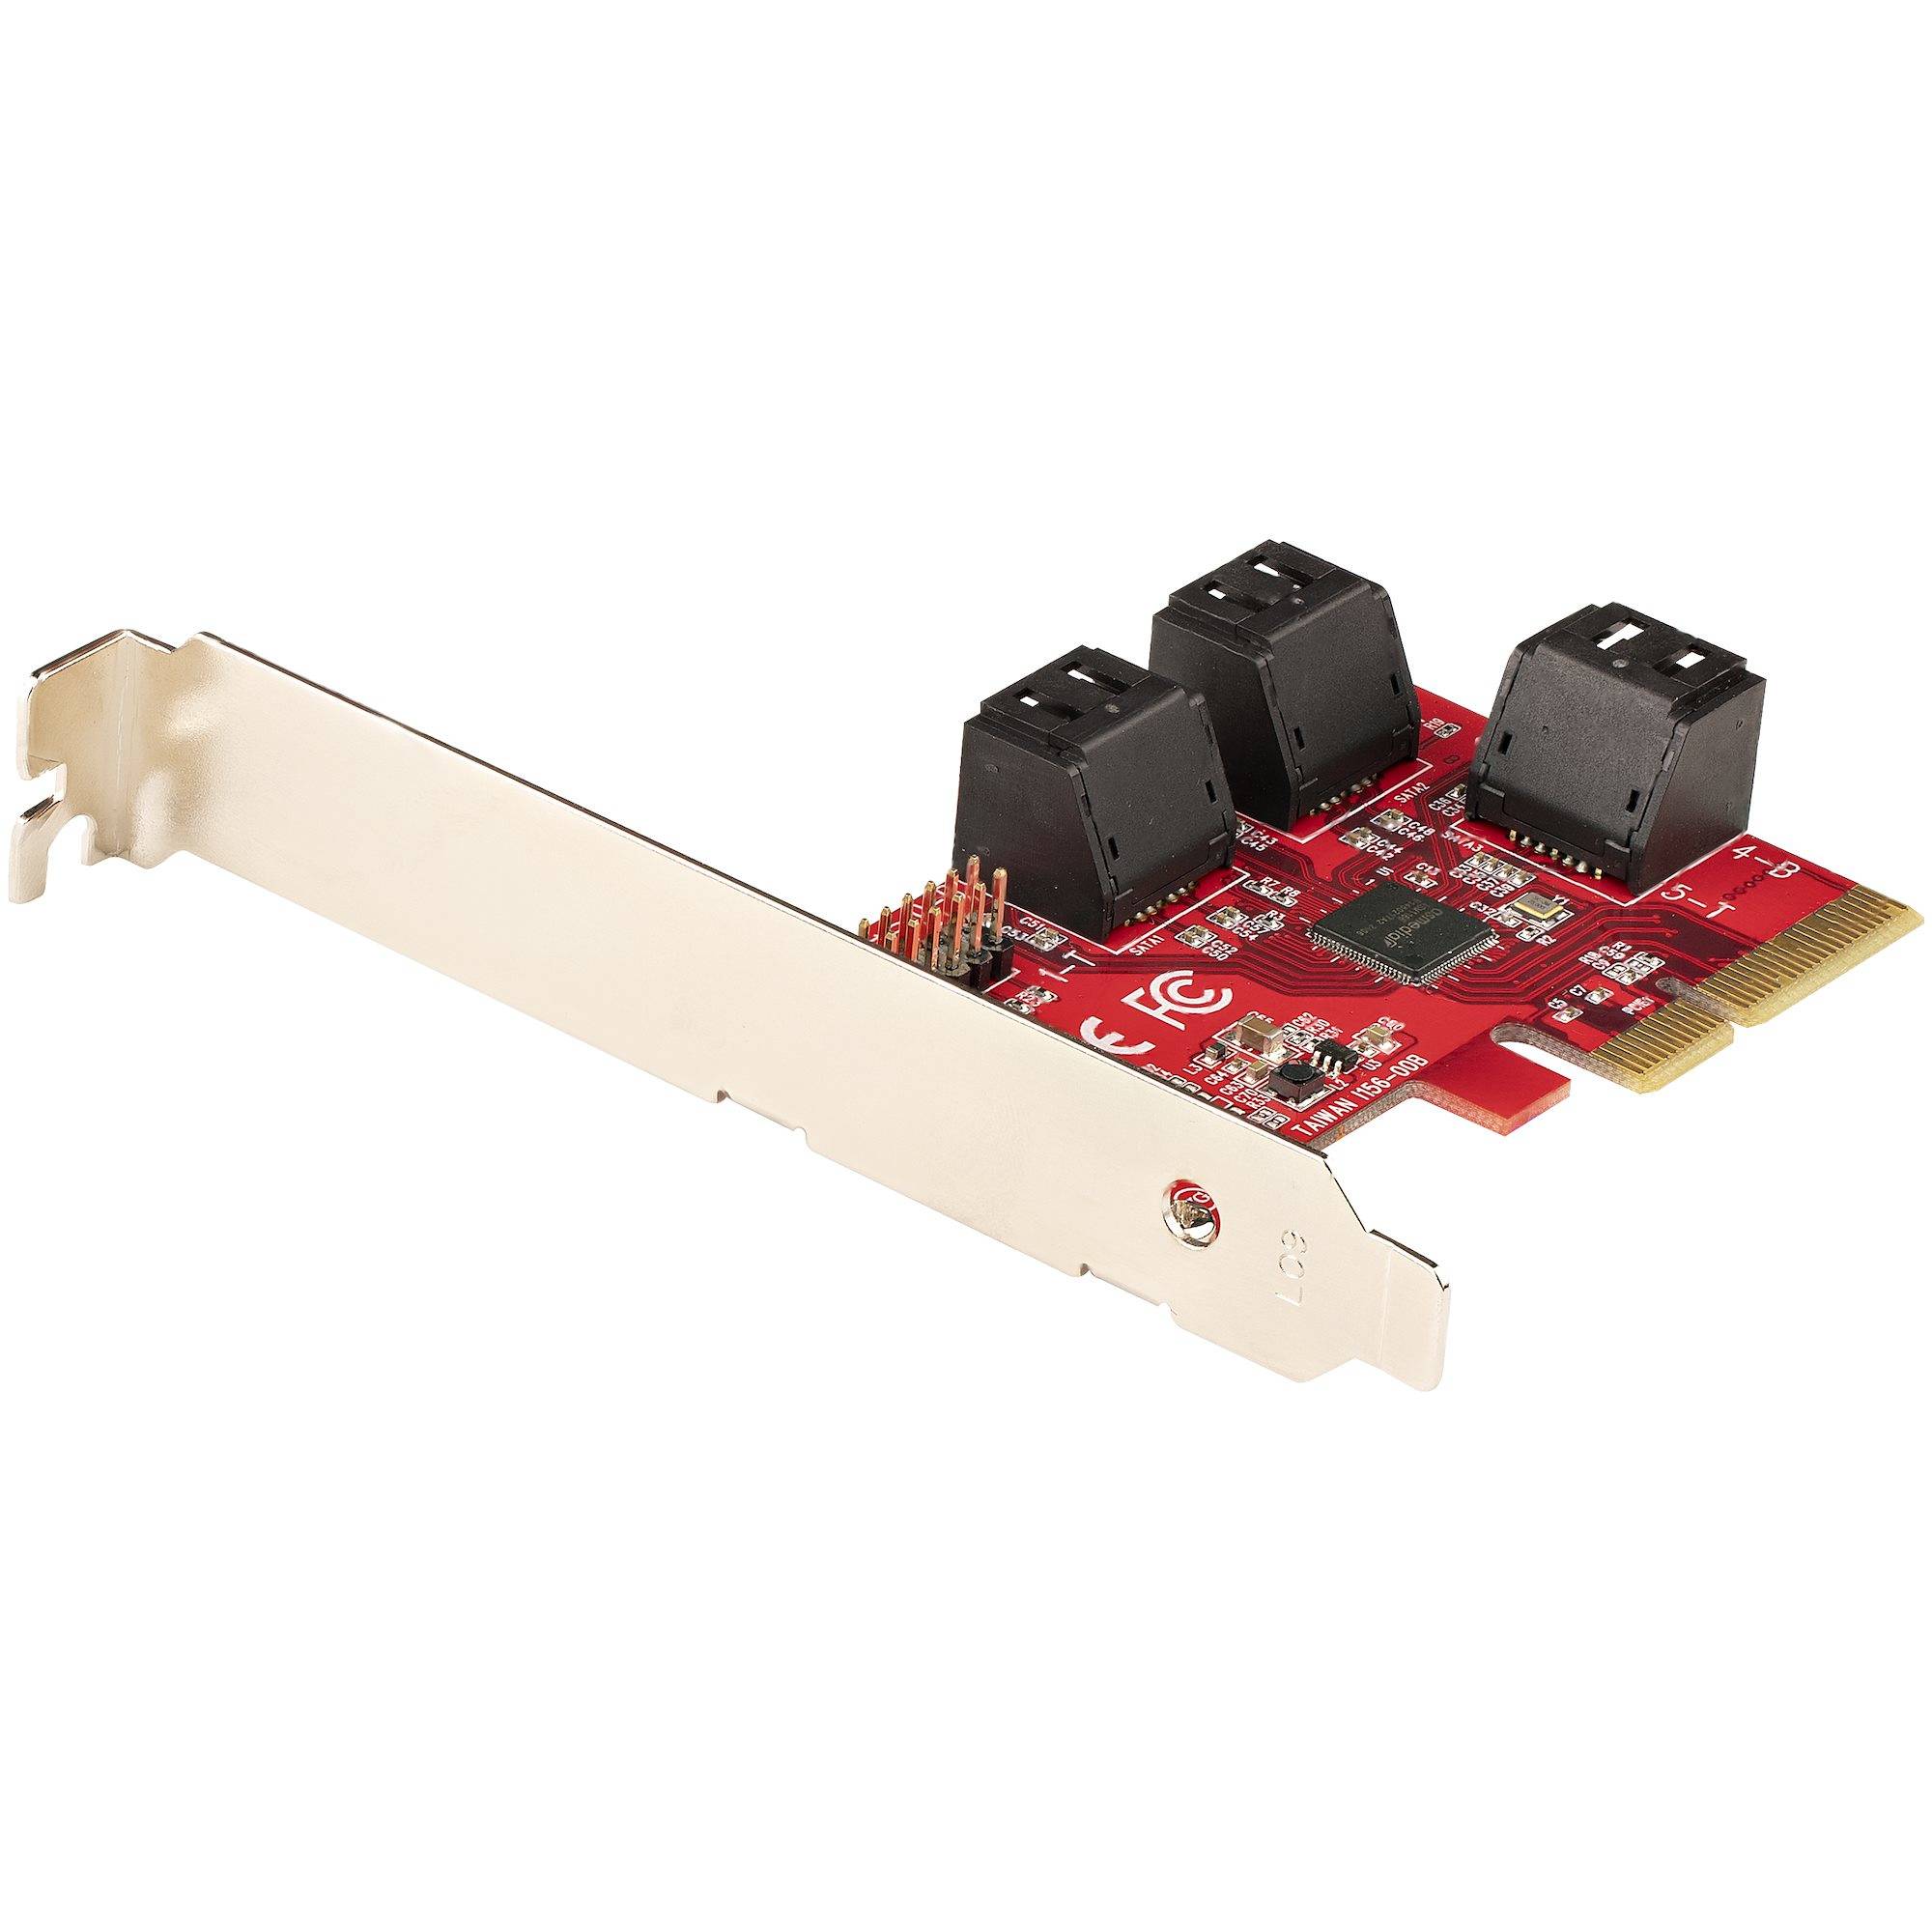 Rca Informatique - Image du produit : SATA PCIE CARD - 6 PORT (6GBPS) PCIE SATA EXPANSION CARD ASM1166